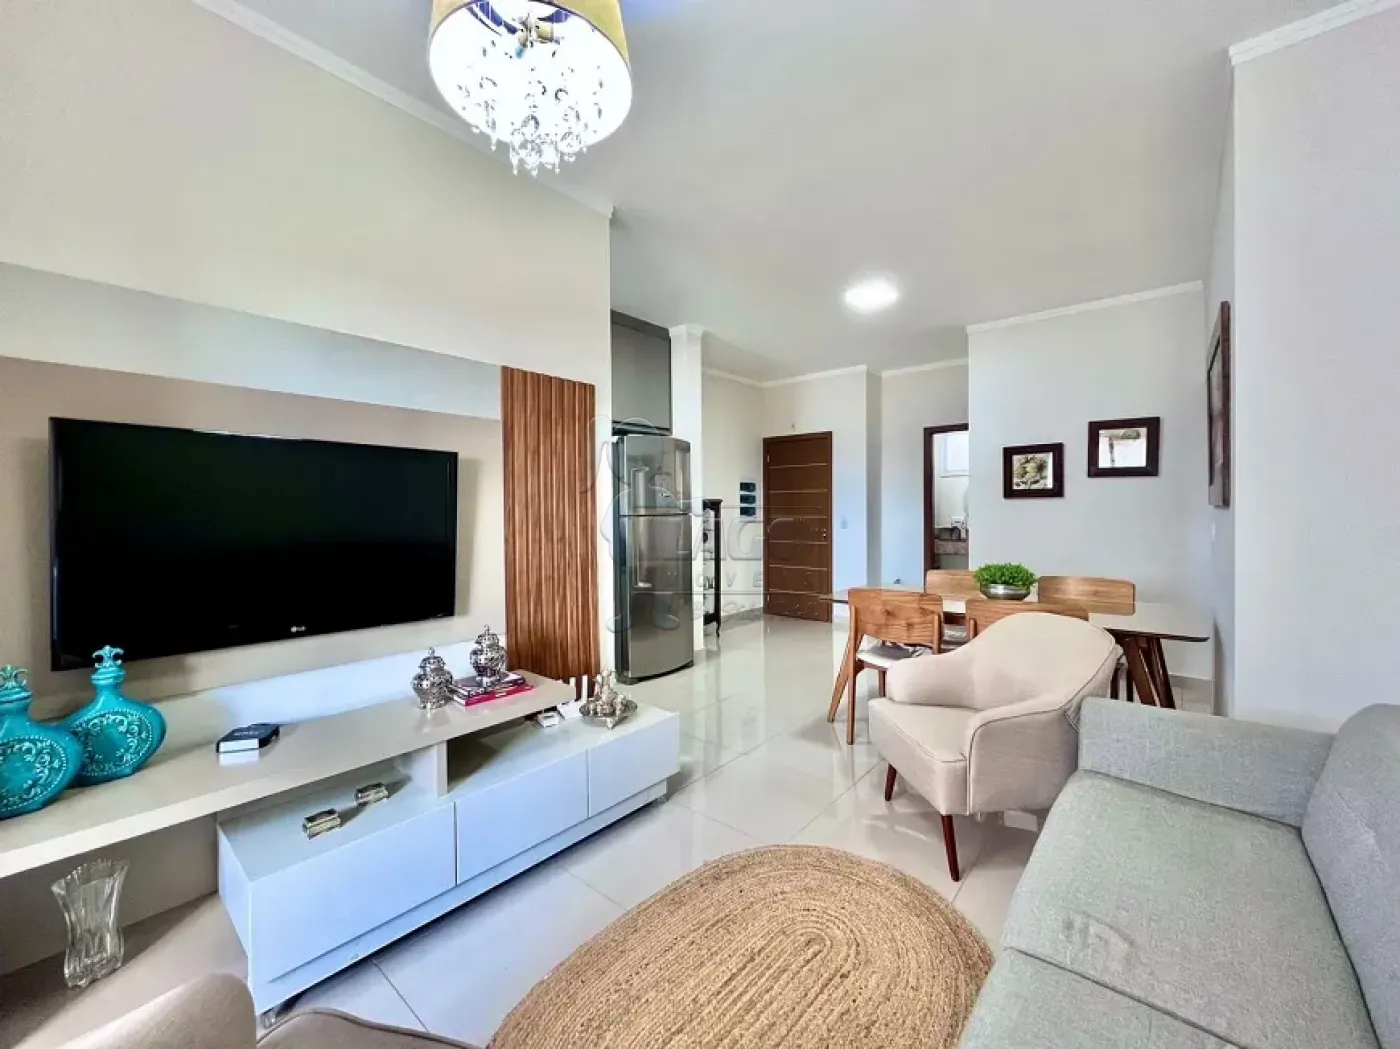 Comprar Apartamentos / Padrão em Ribeirão Preto R$ 530.000,00 - Foto 1